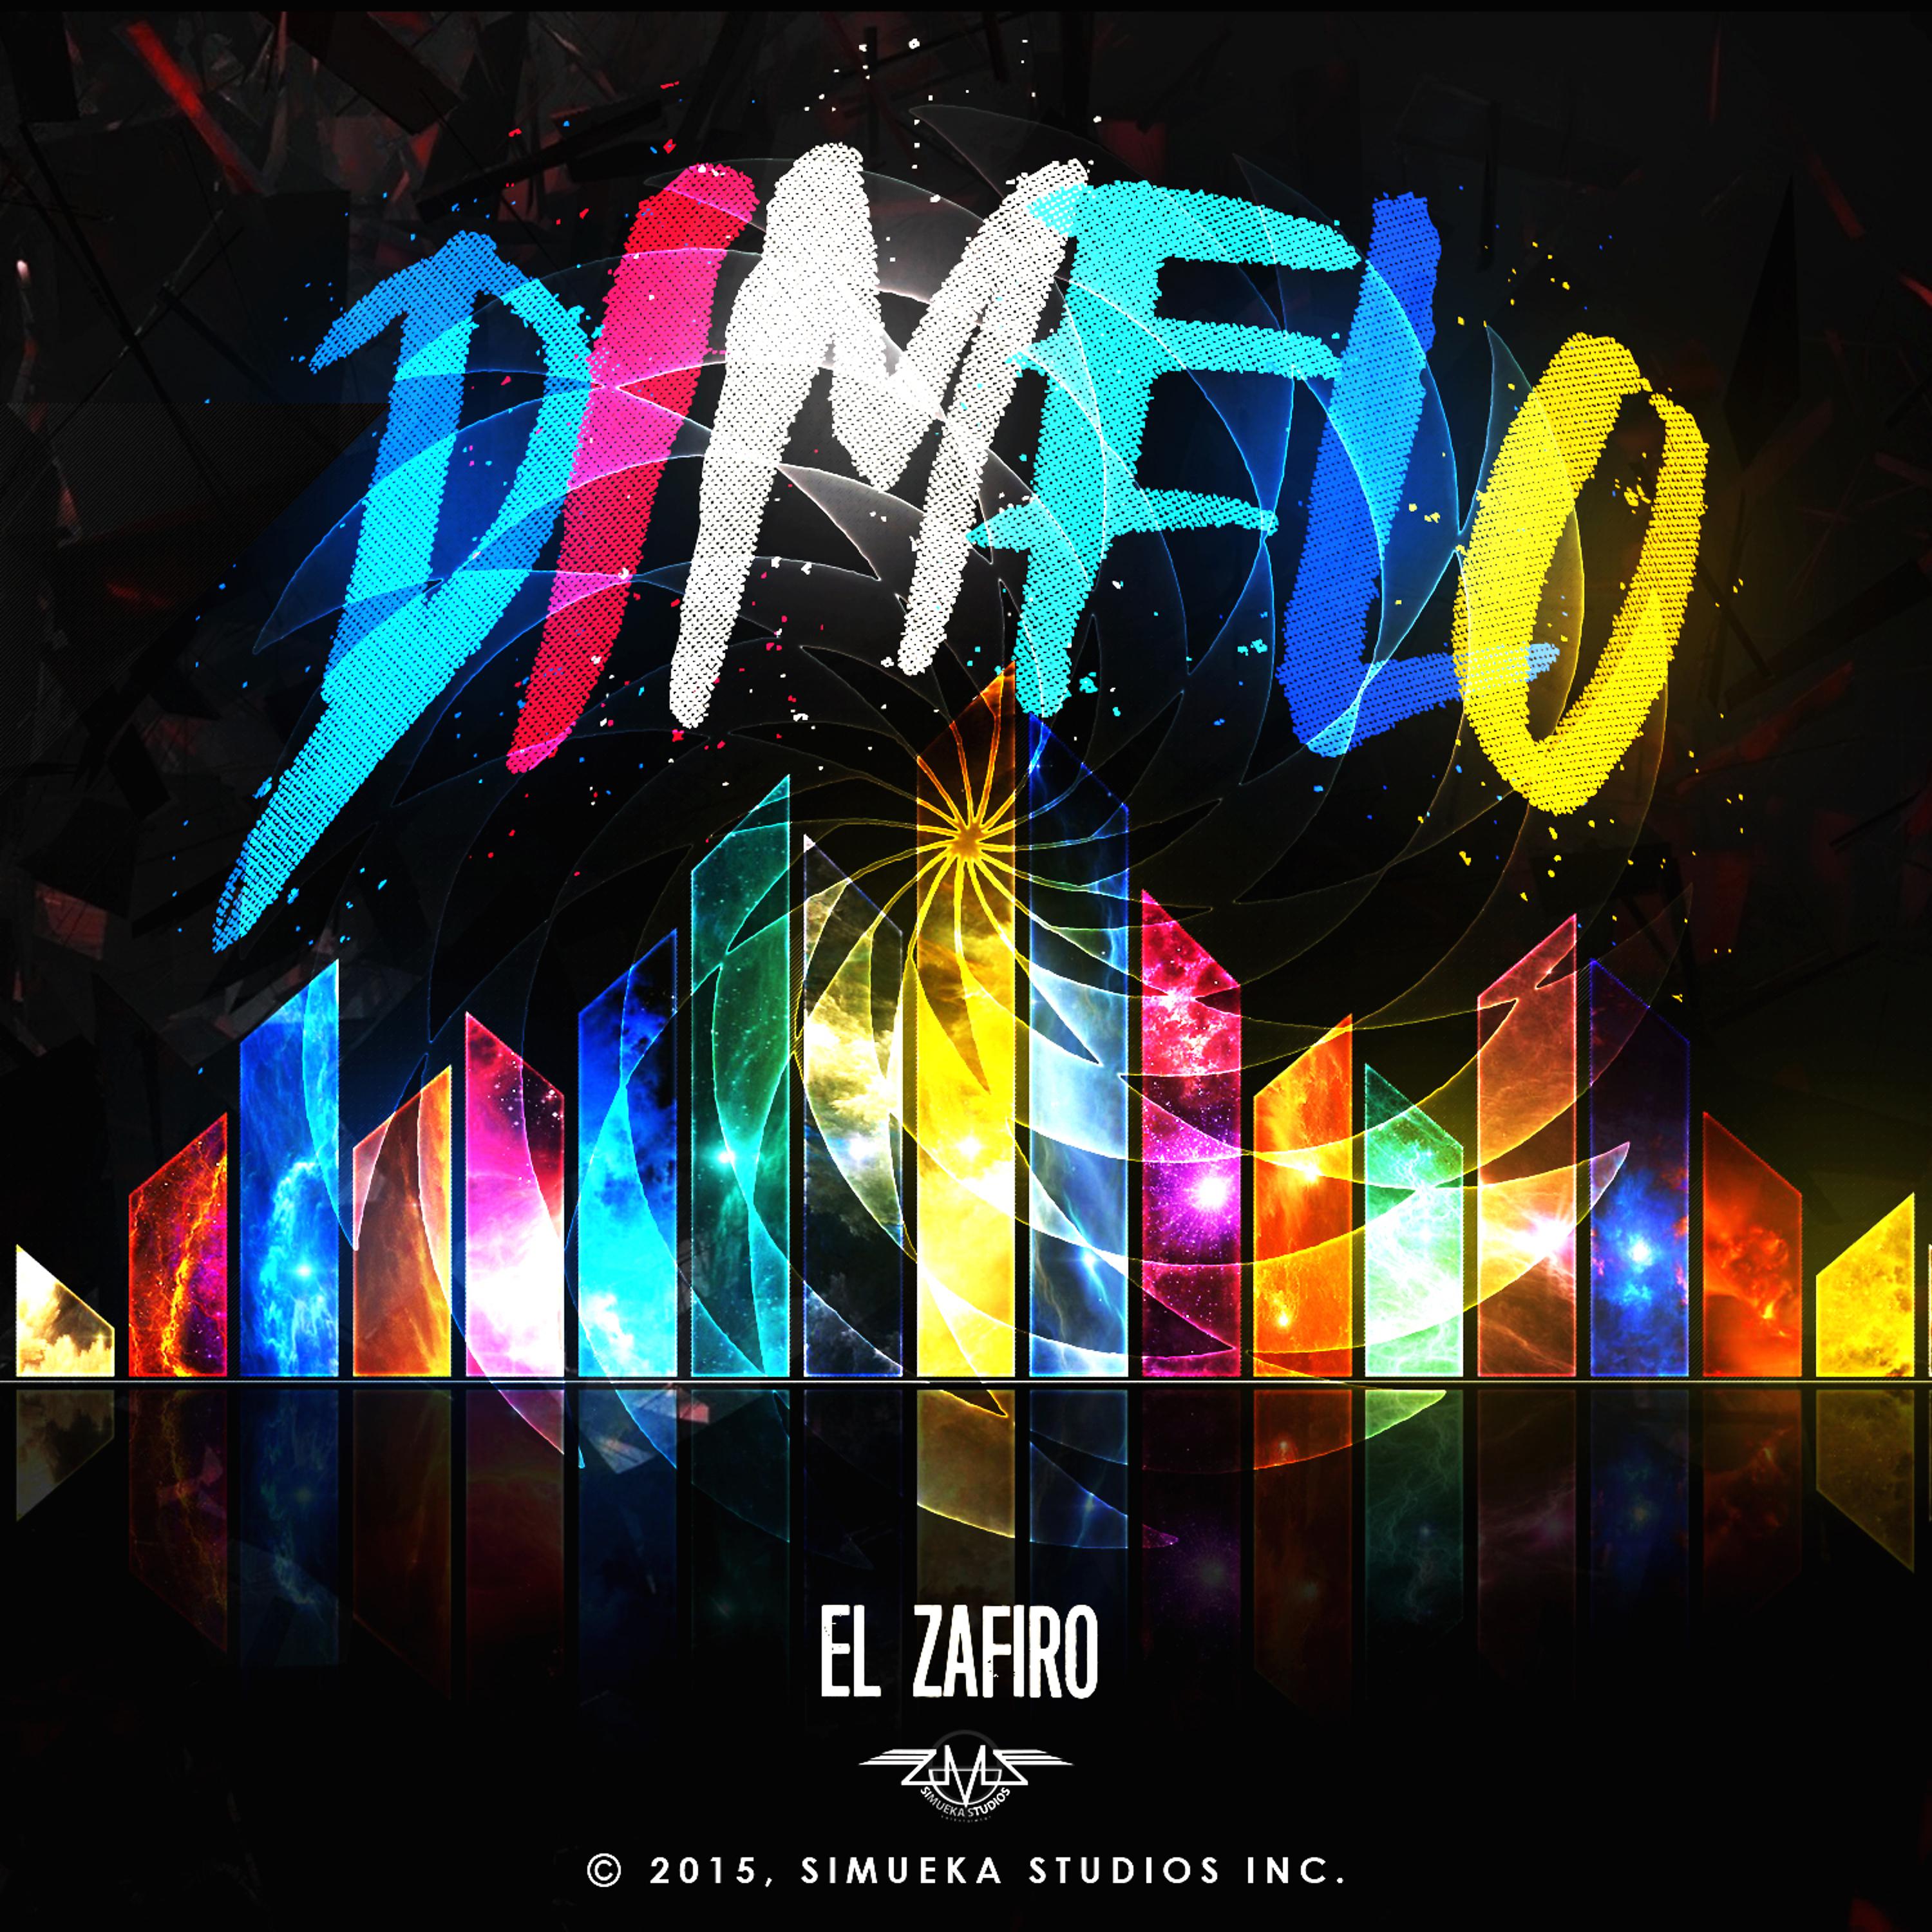 Постер альбома Dimelo